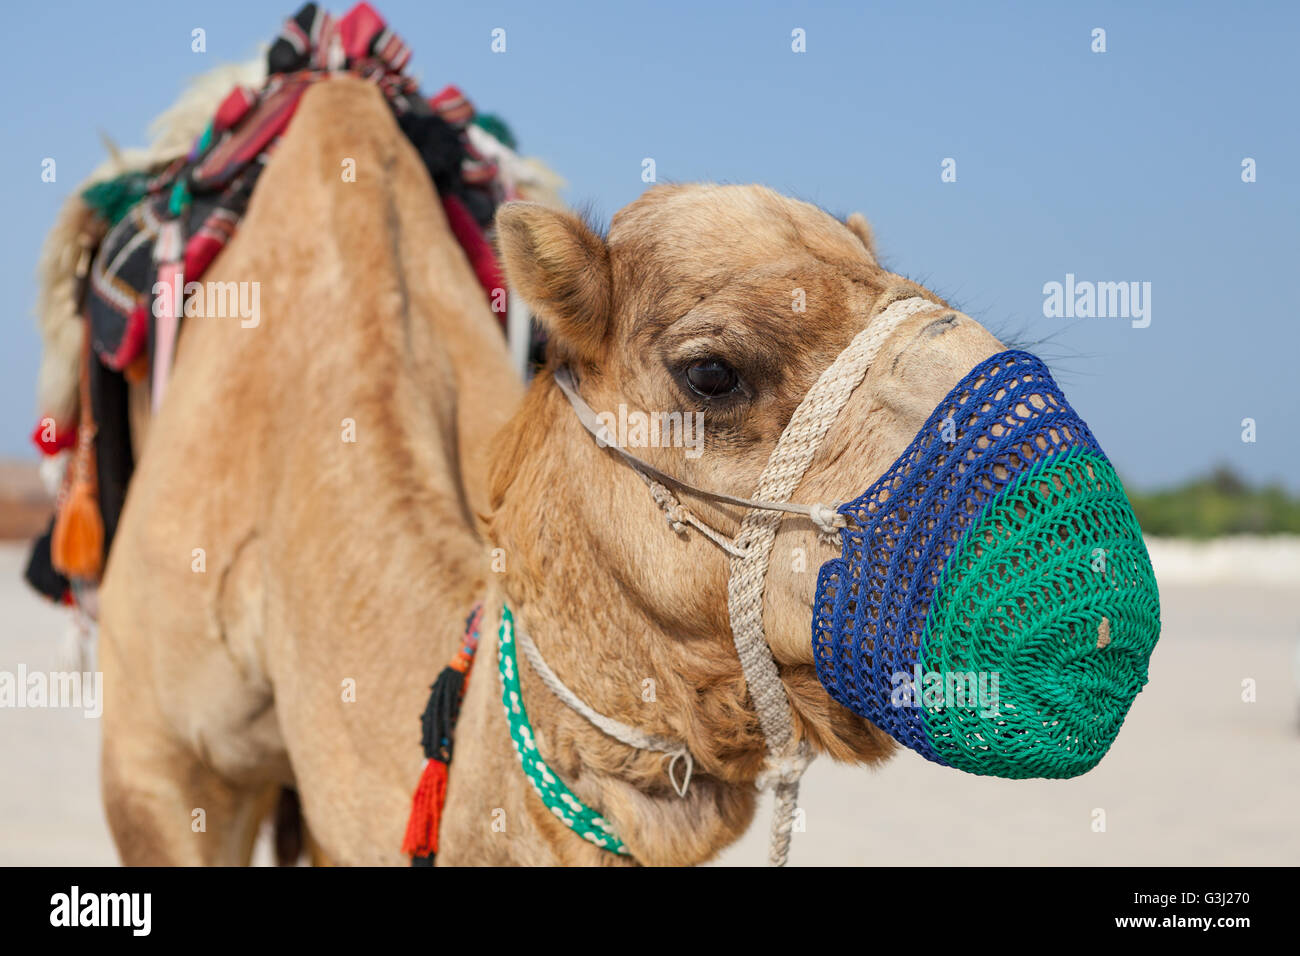 Kamele bei Sealine, Katar zu Beginn eine Wüstensafari erleben. Kamelreiten. Stockfoto